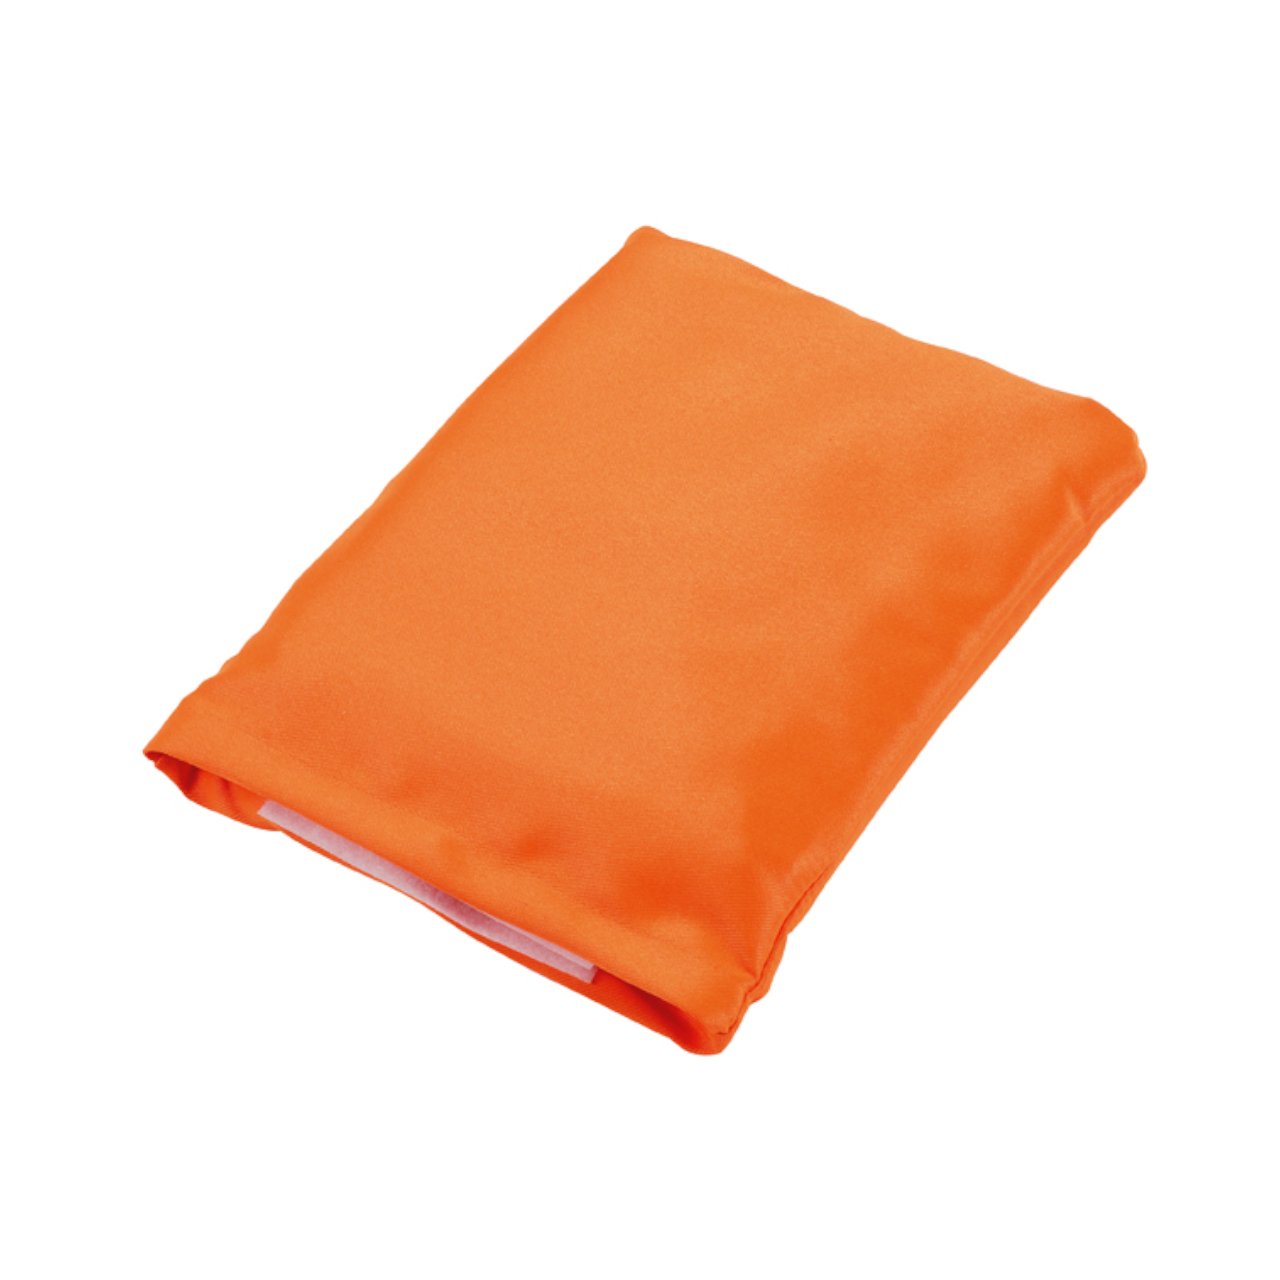 Warnweste Orange PVC - Handschuhdiscount24